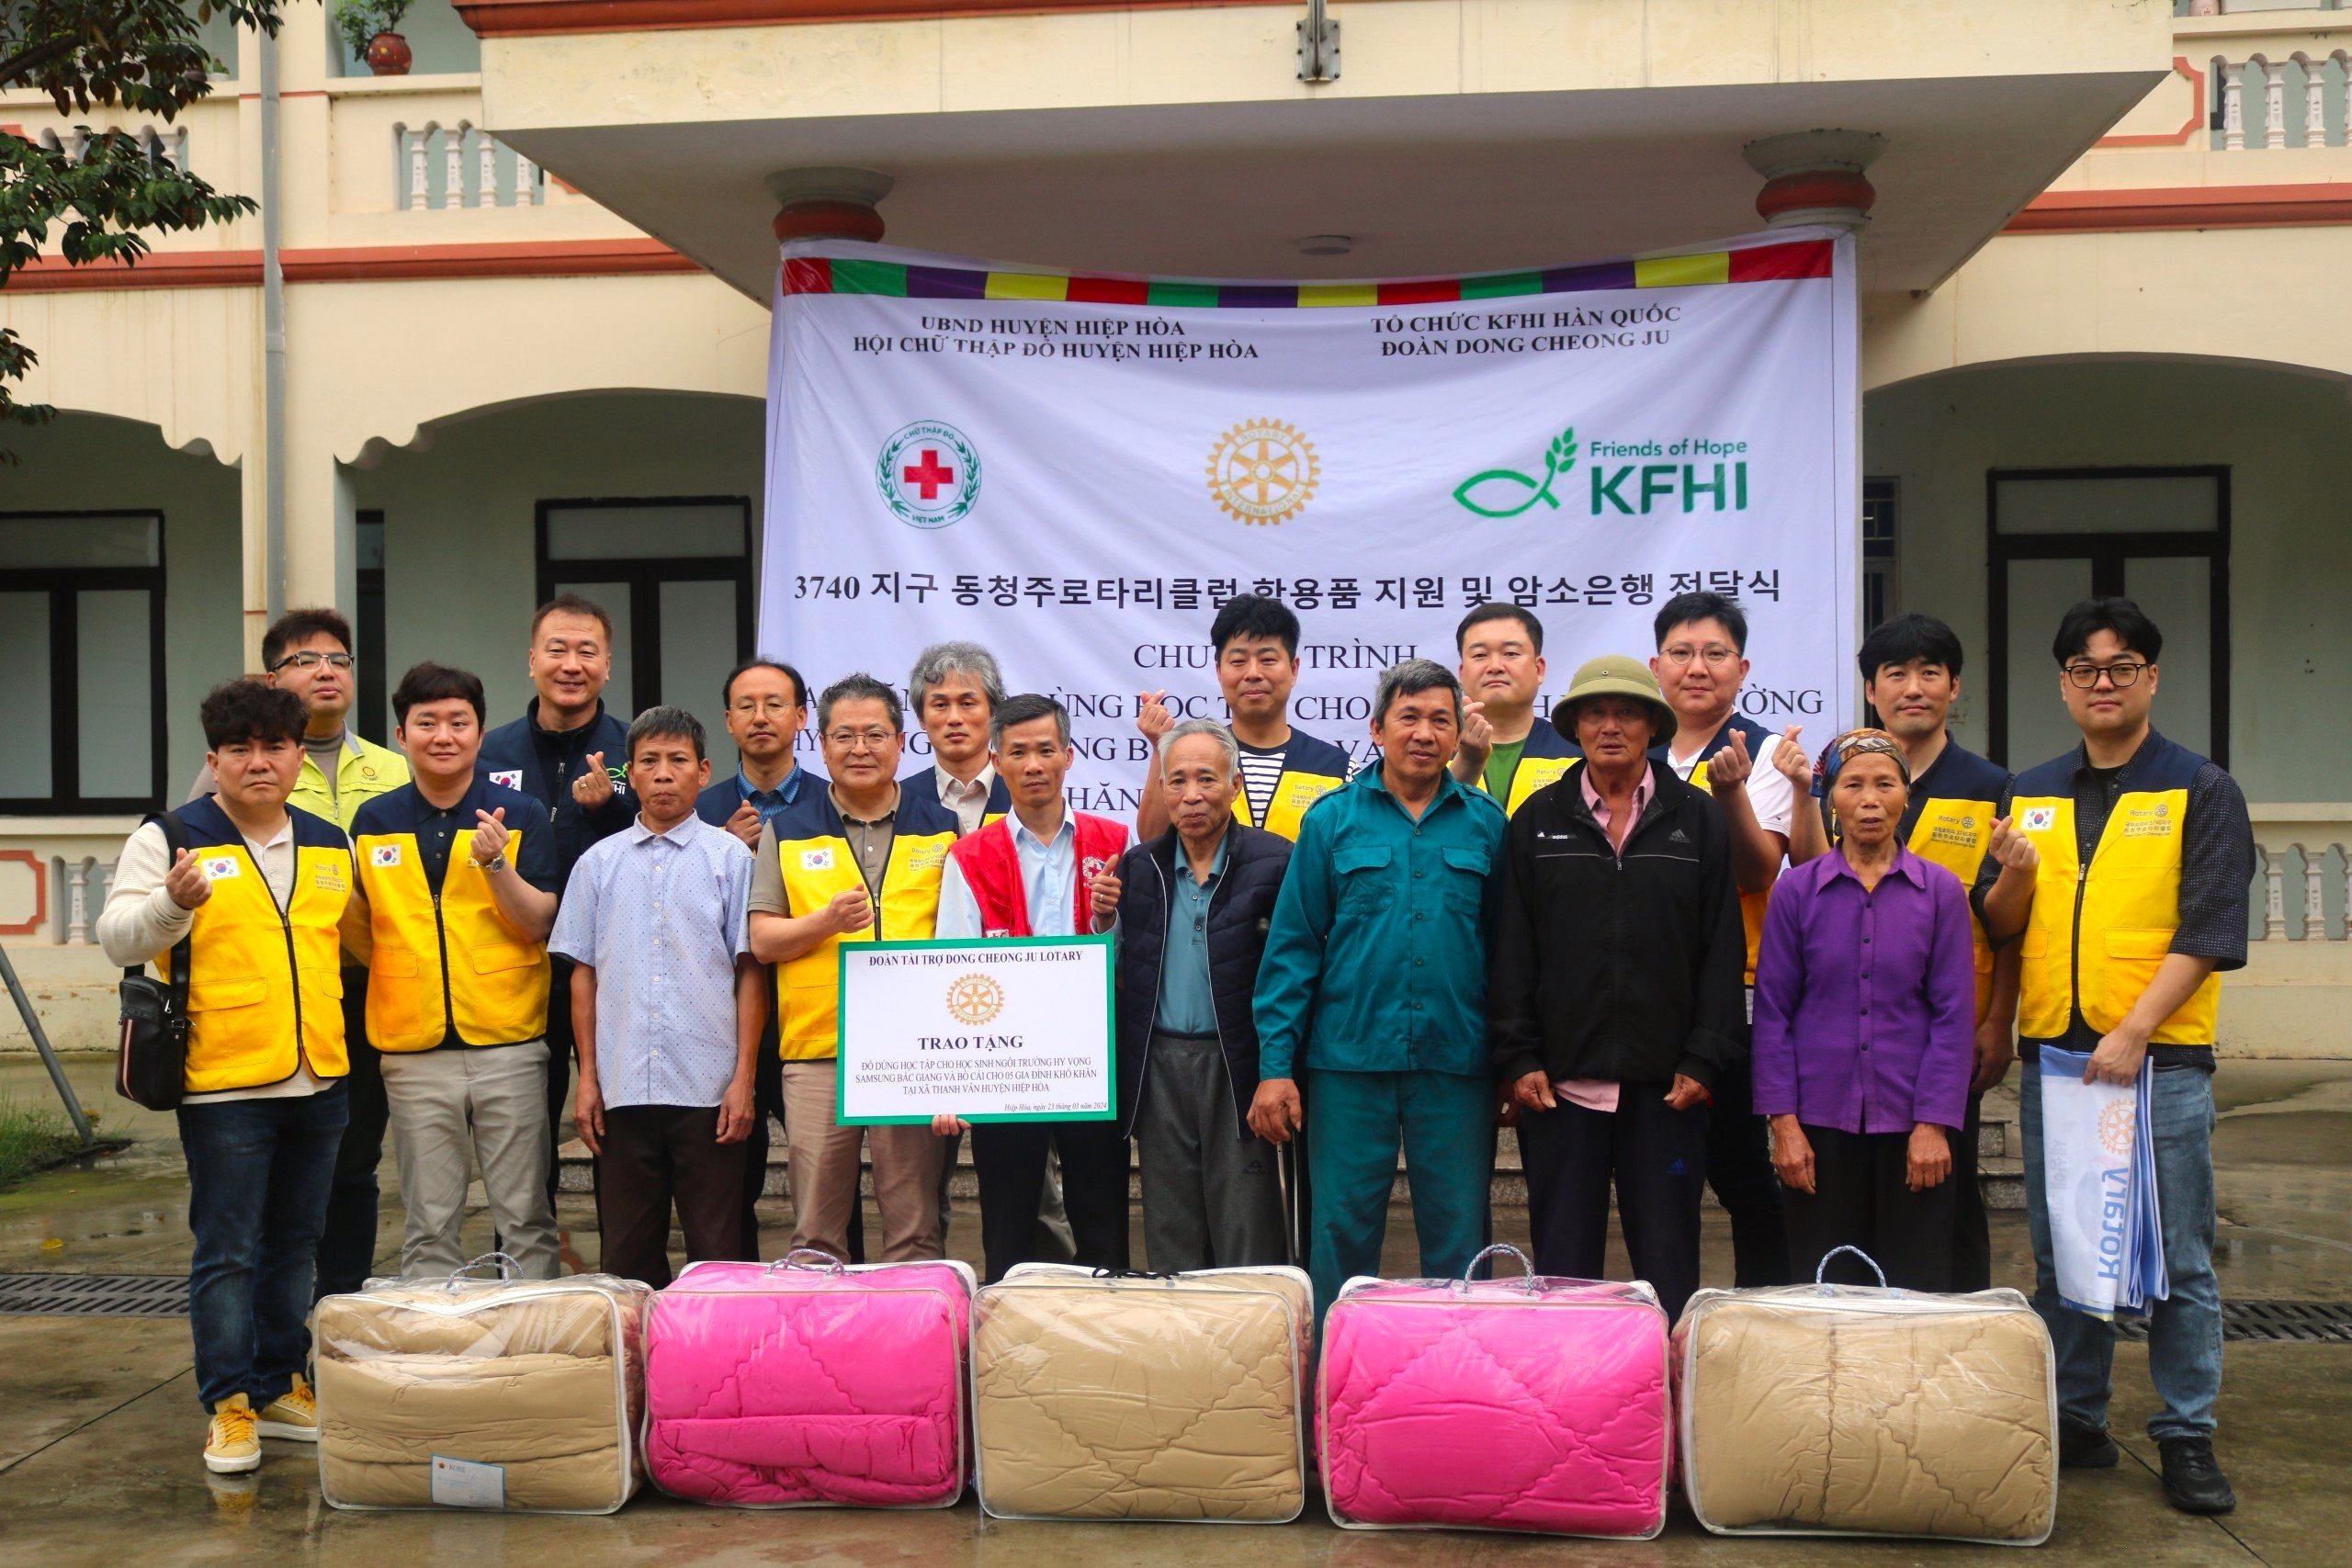 Đoàn Dong Cheong Ju thuộc Tổ chức KFHI (Hàn Quốc), trao viện trợ cho Hội CTĐ huyện Hiệp Hoà, tỉnh Bắc Giang